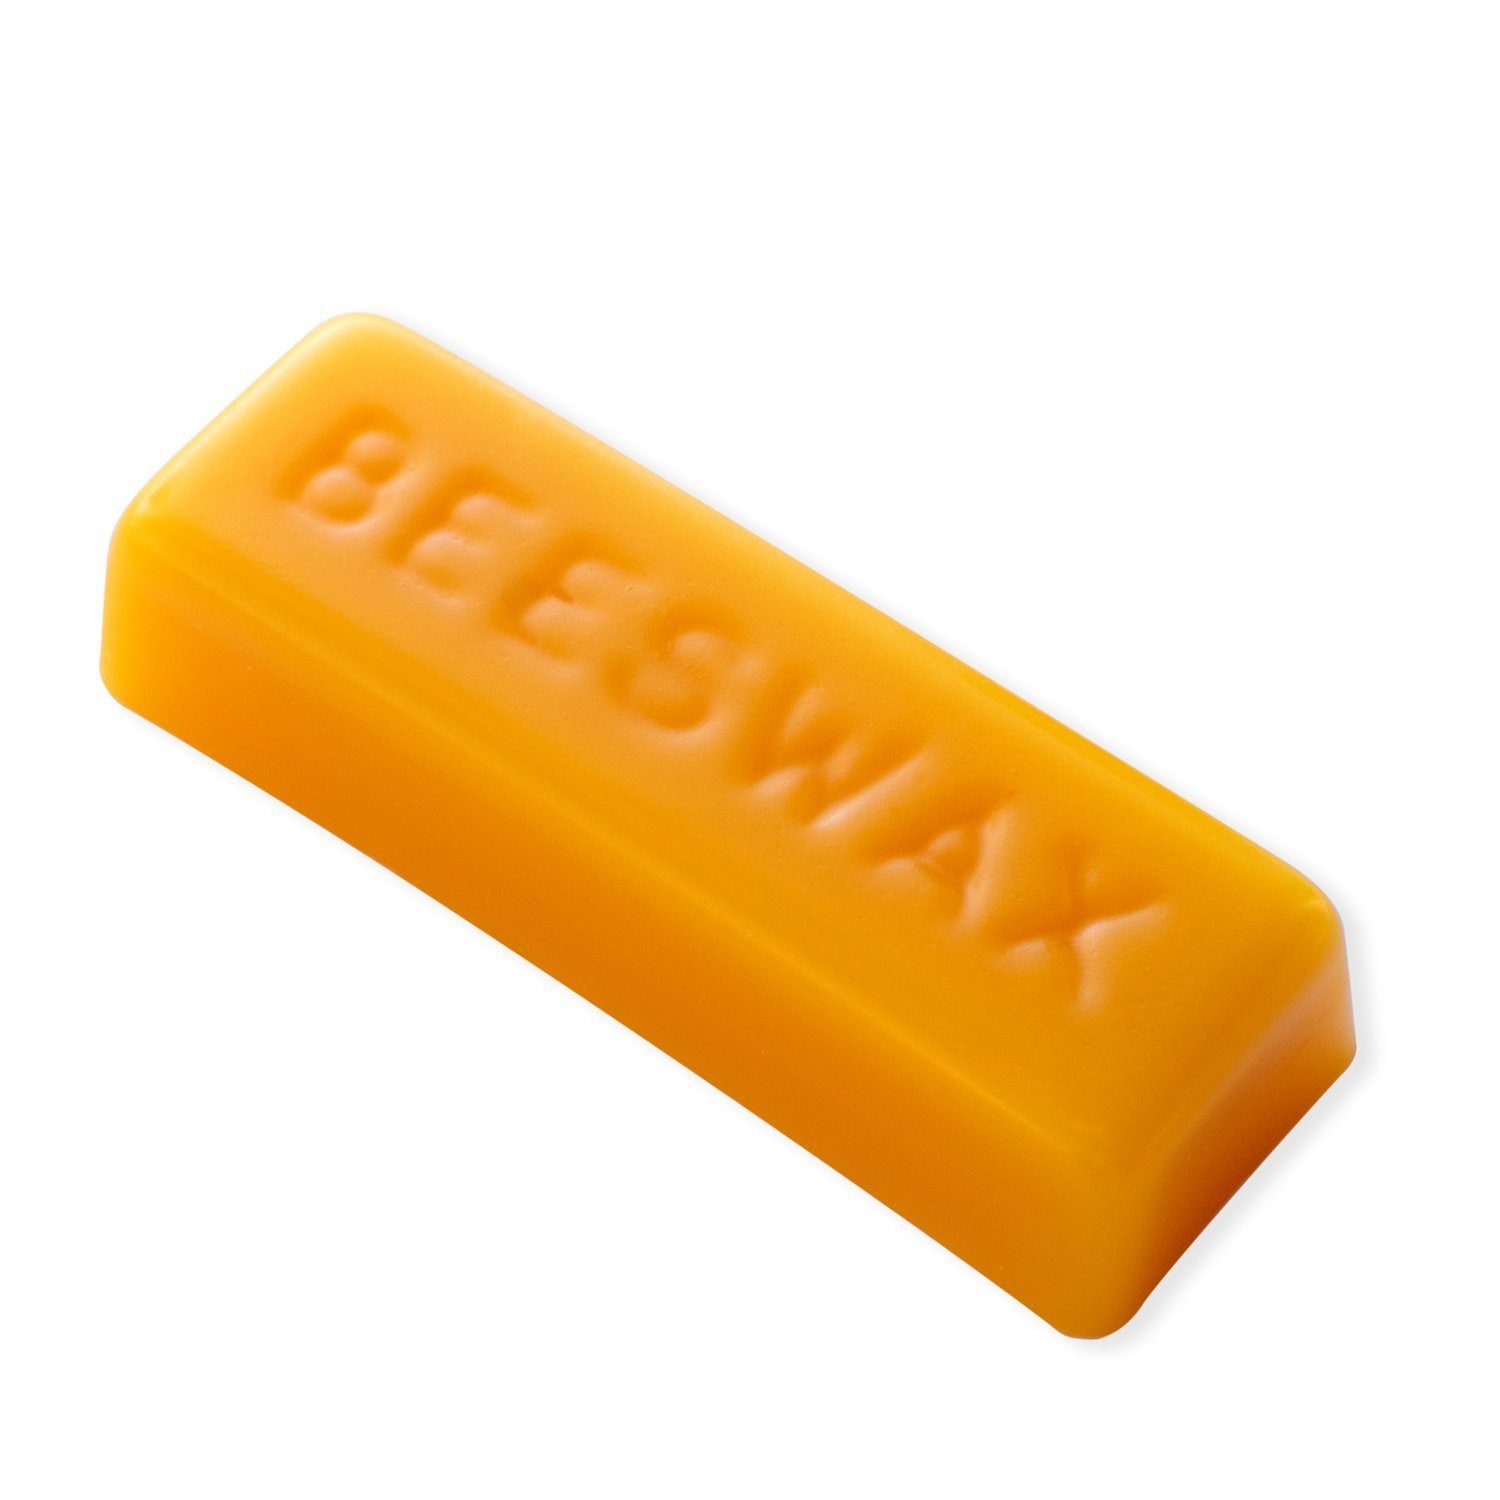 1 oz Beeswax Bar